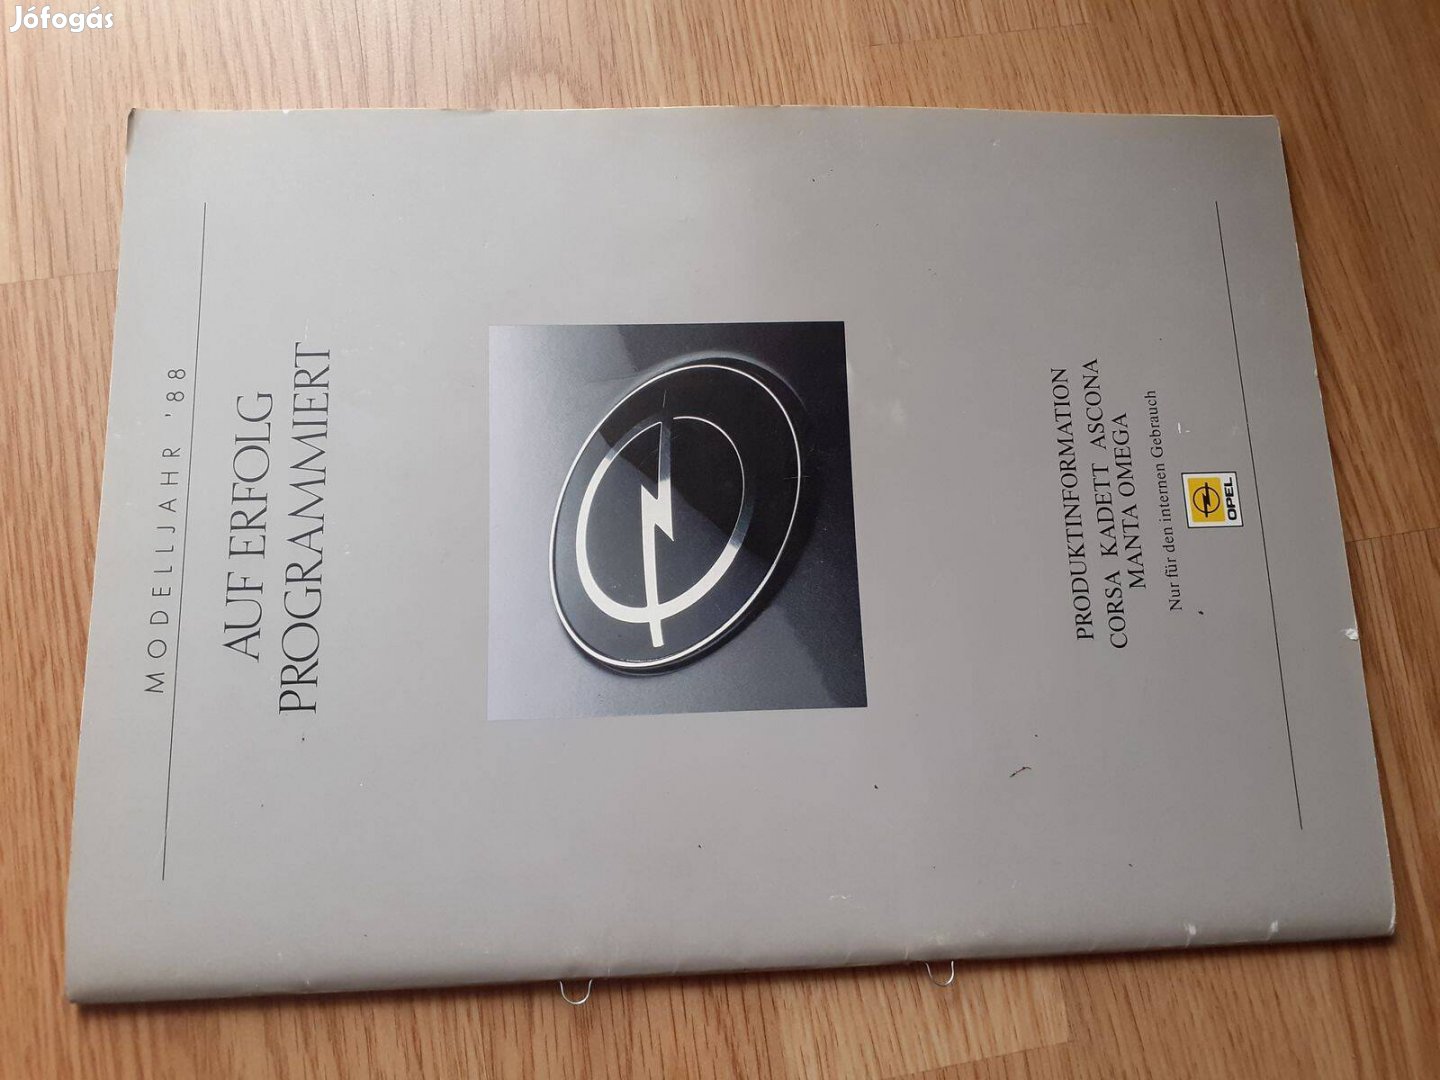 Opel (Modellek) Program 1988 modellév prospektus - 1987, német nyelvű